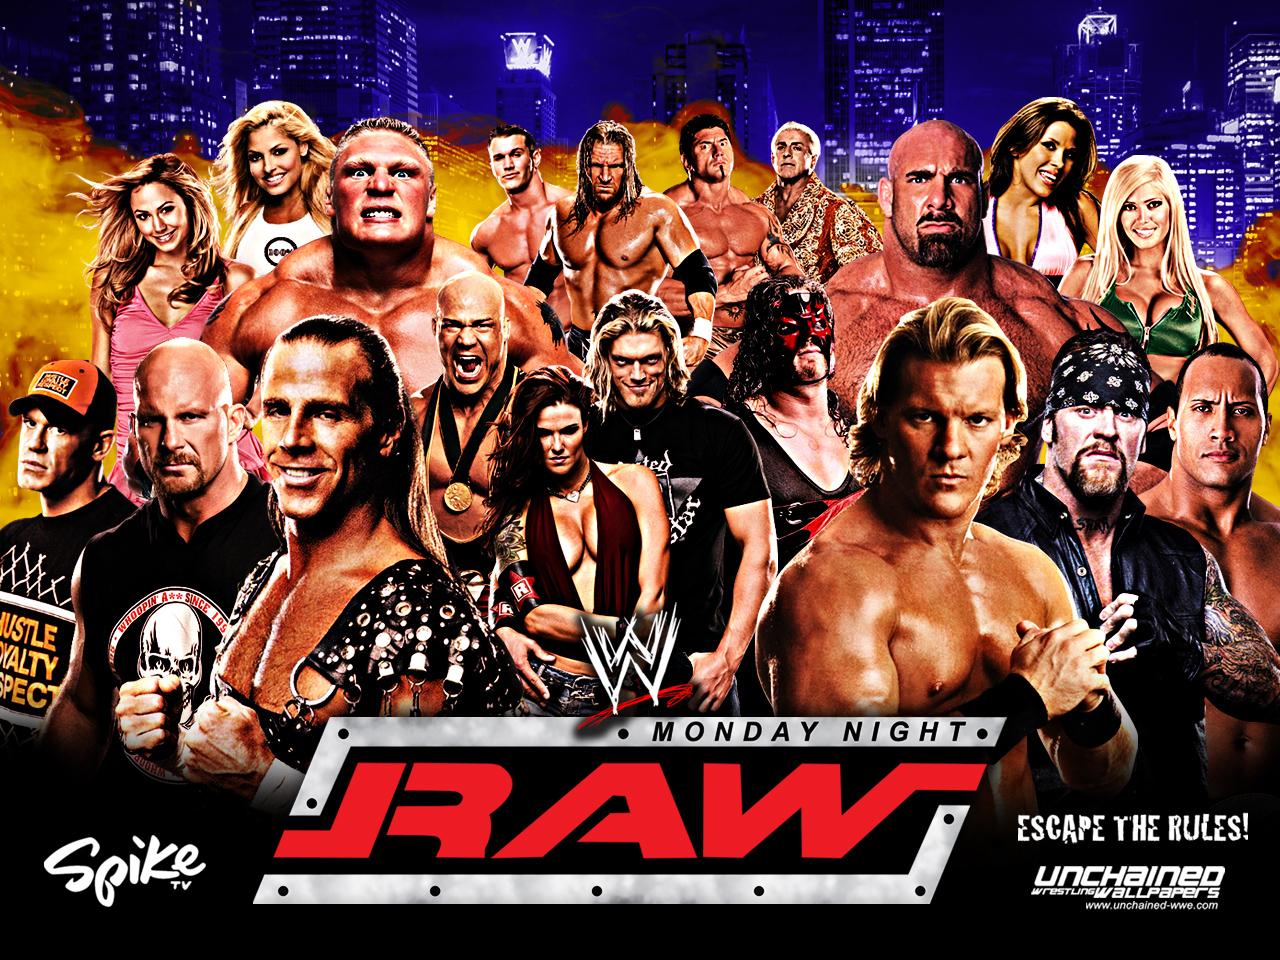 WWE image WWE Monday Night Raw HD wallpaper and background photo